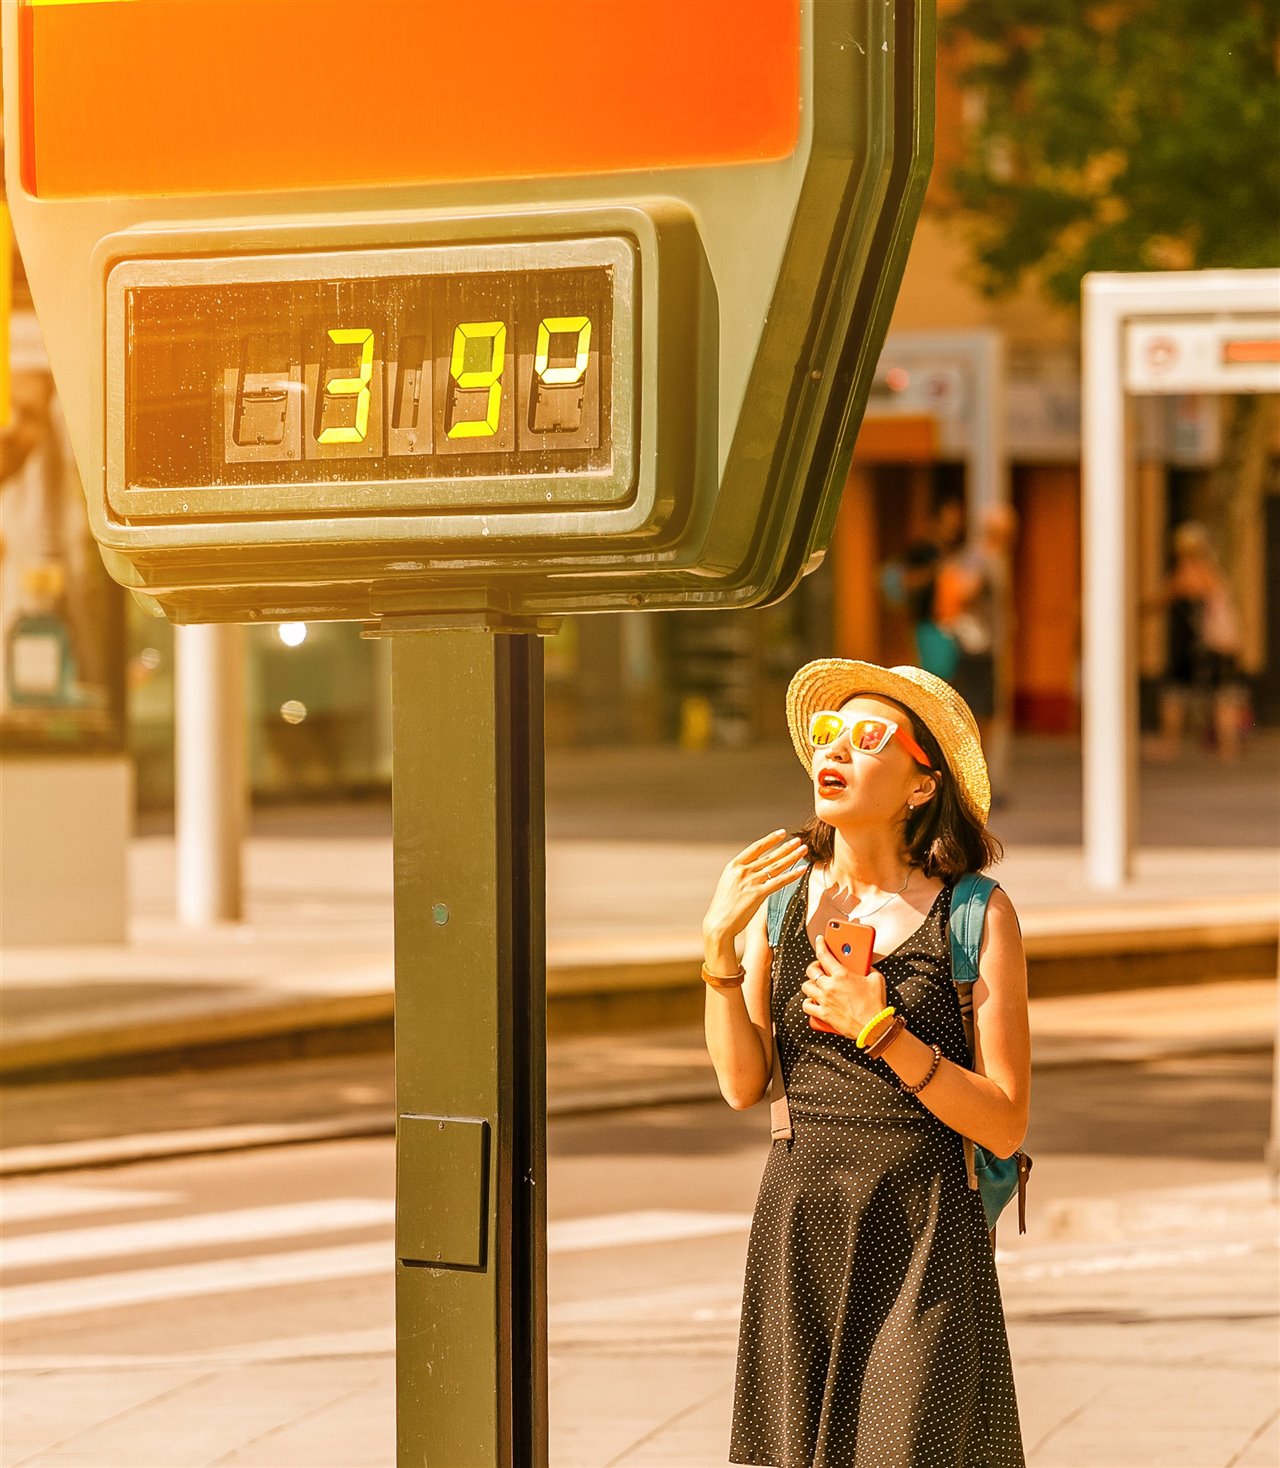 Una mujer acalorada se abanica junto a un termómetro callejero que marca 39 ºC.